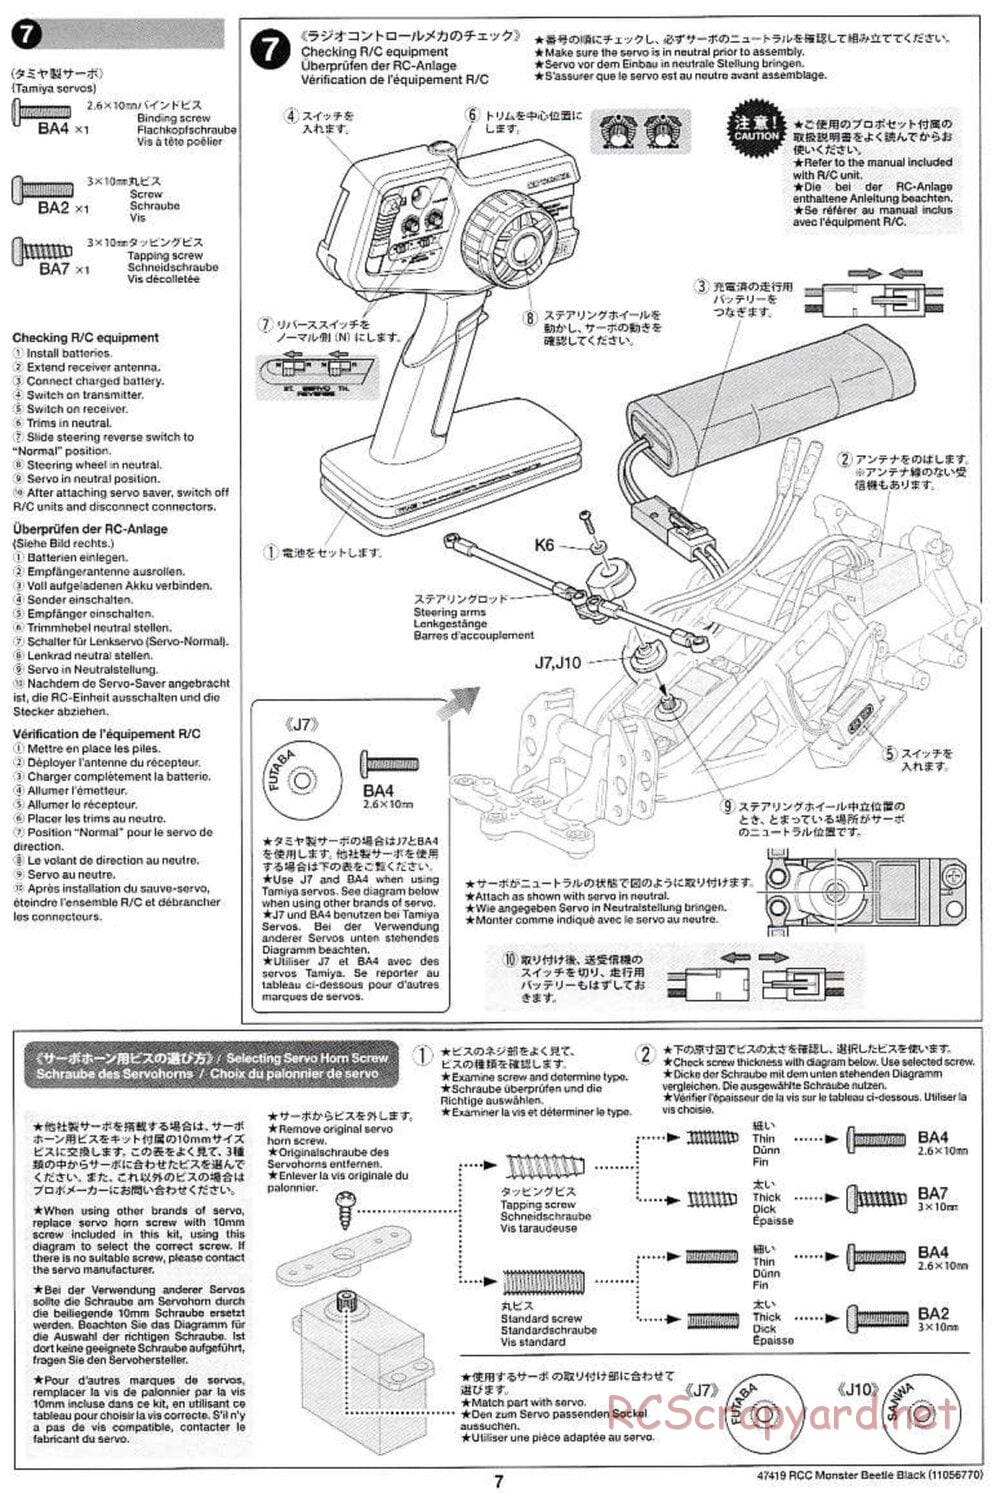 Tamiya - Monster Beetle Black Edition - ORV Chassis - Manual - Page 7